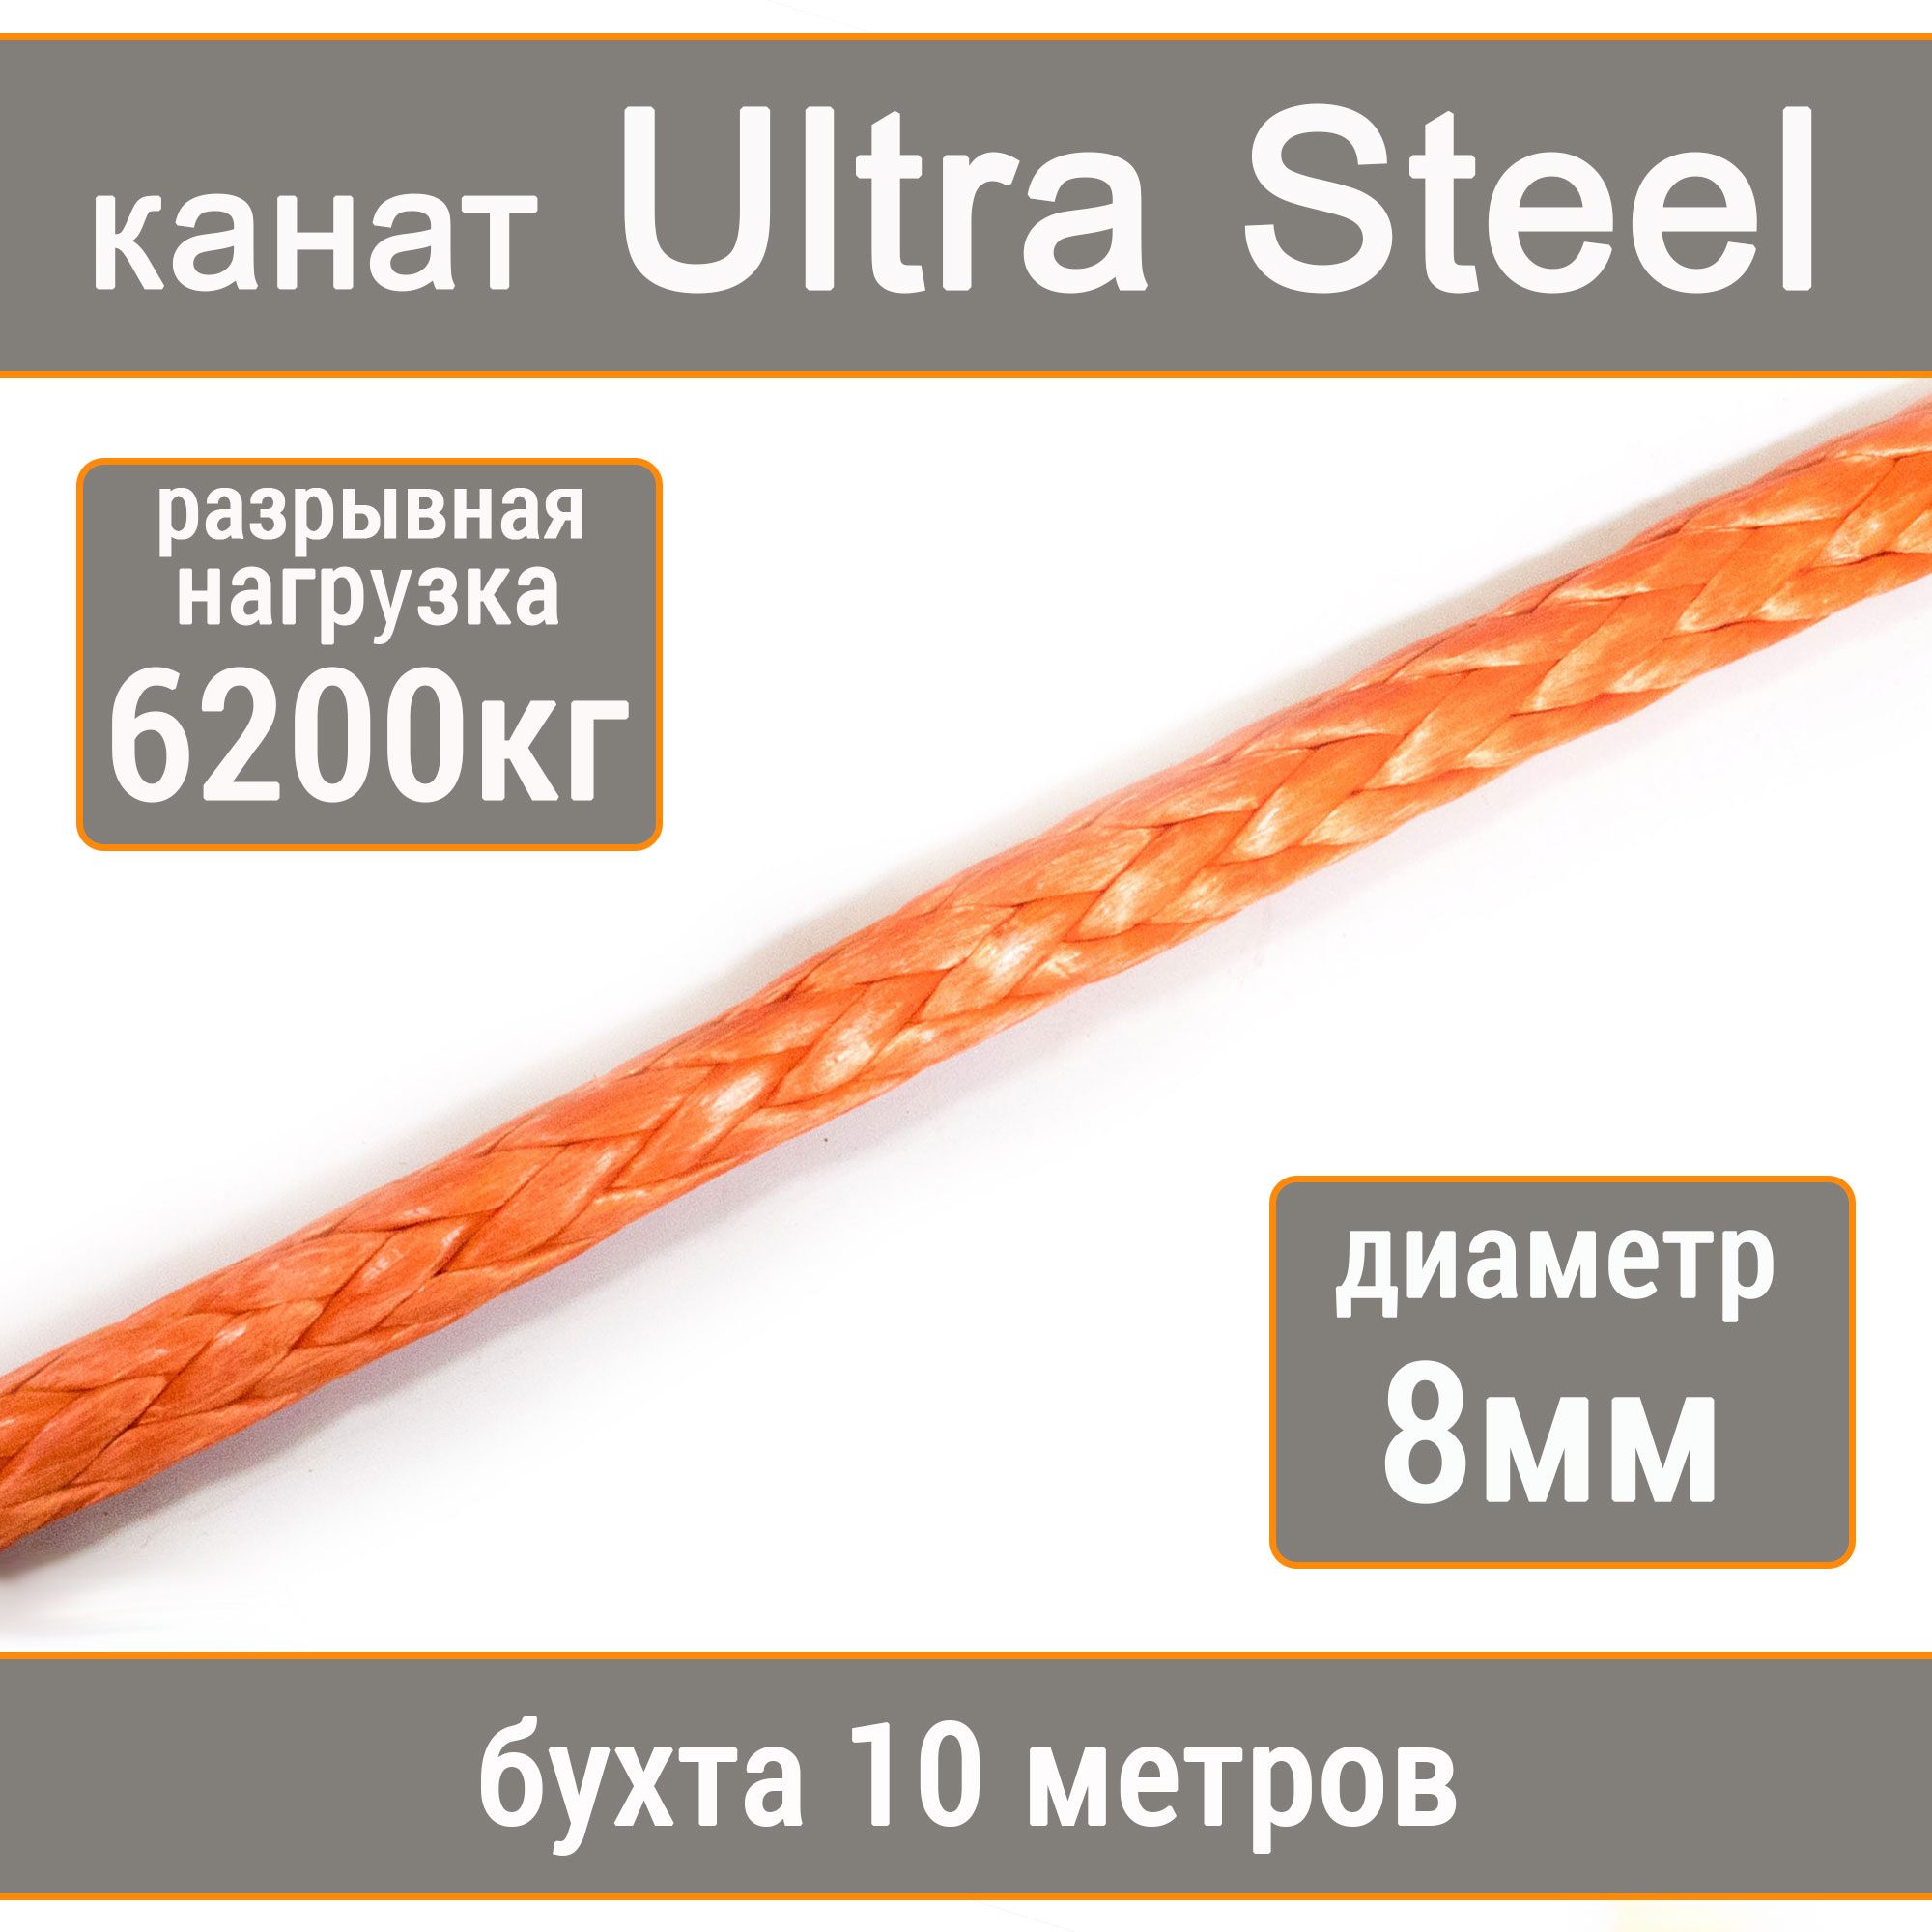 Высокопрочный синтетический канат UTX Ultra Steel 8мм р.н.6200кг, 007654321-108